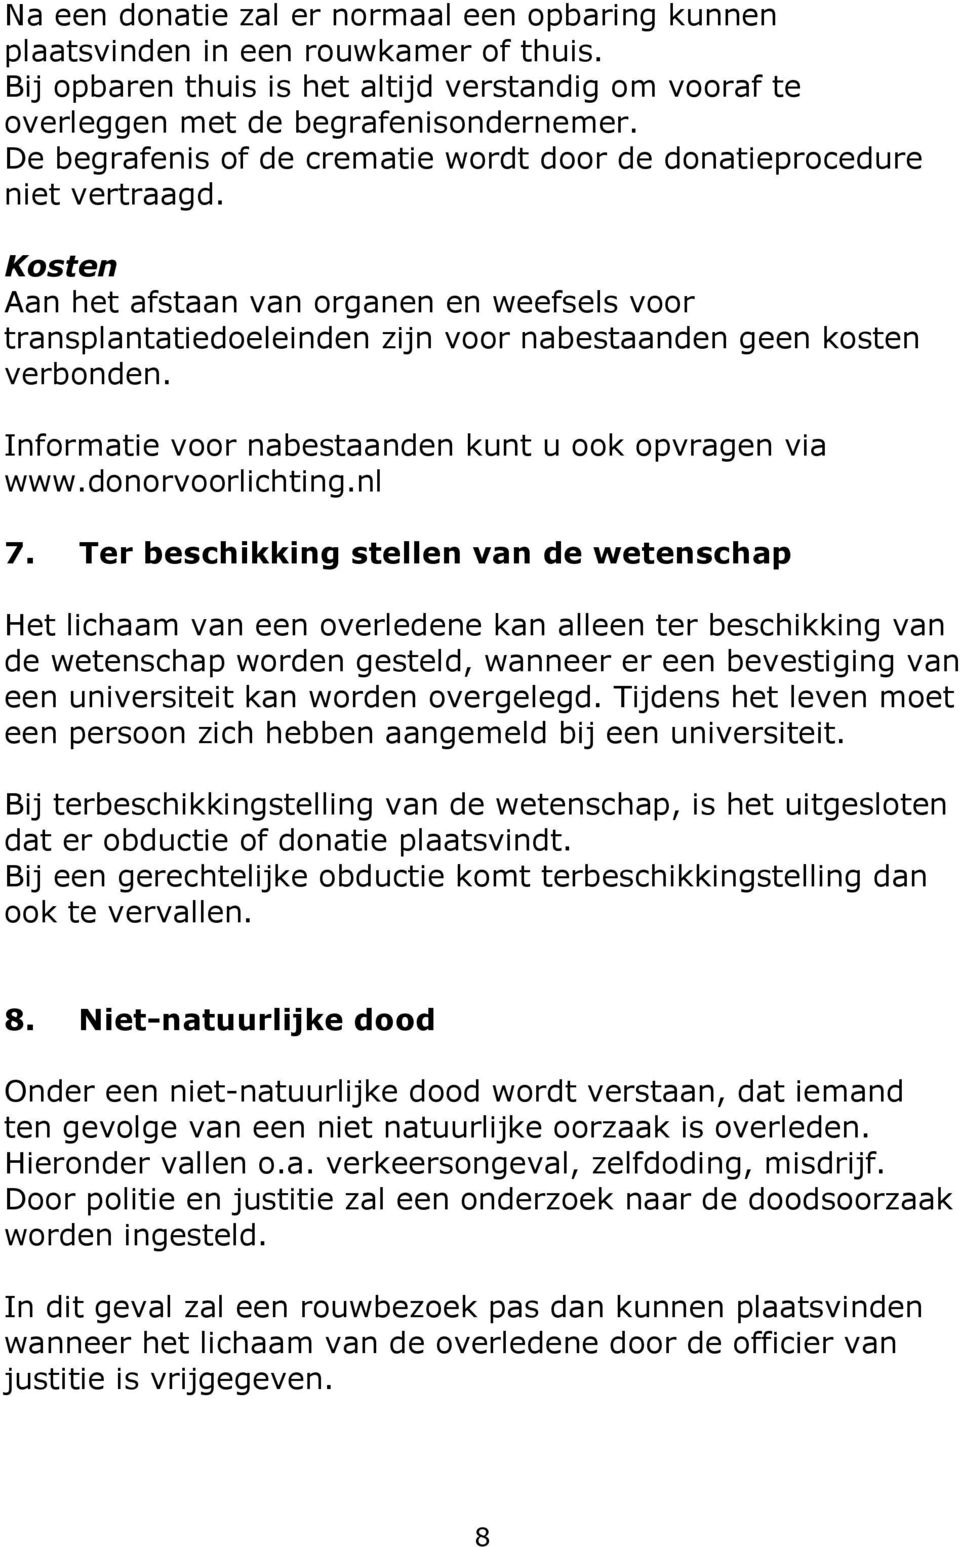 Informatie voor nabestaanden kunt u ook opvragen via www.donorvoorlichting.nl 7.